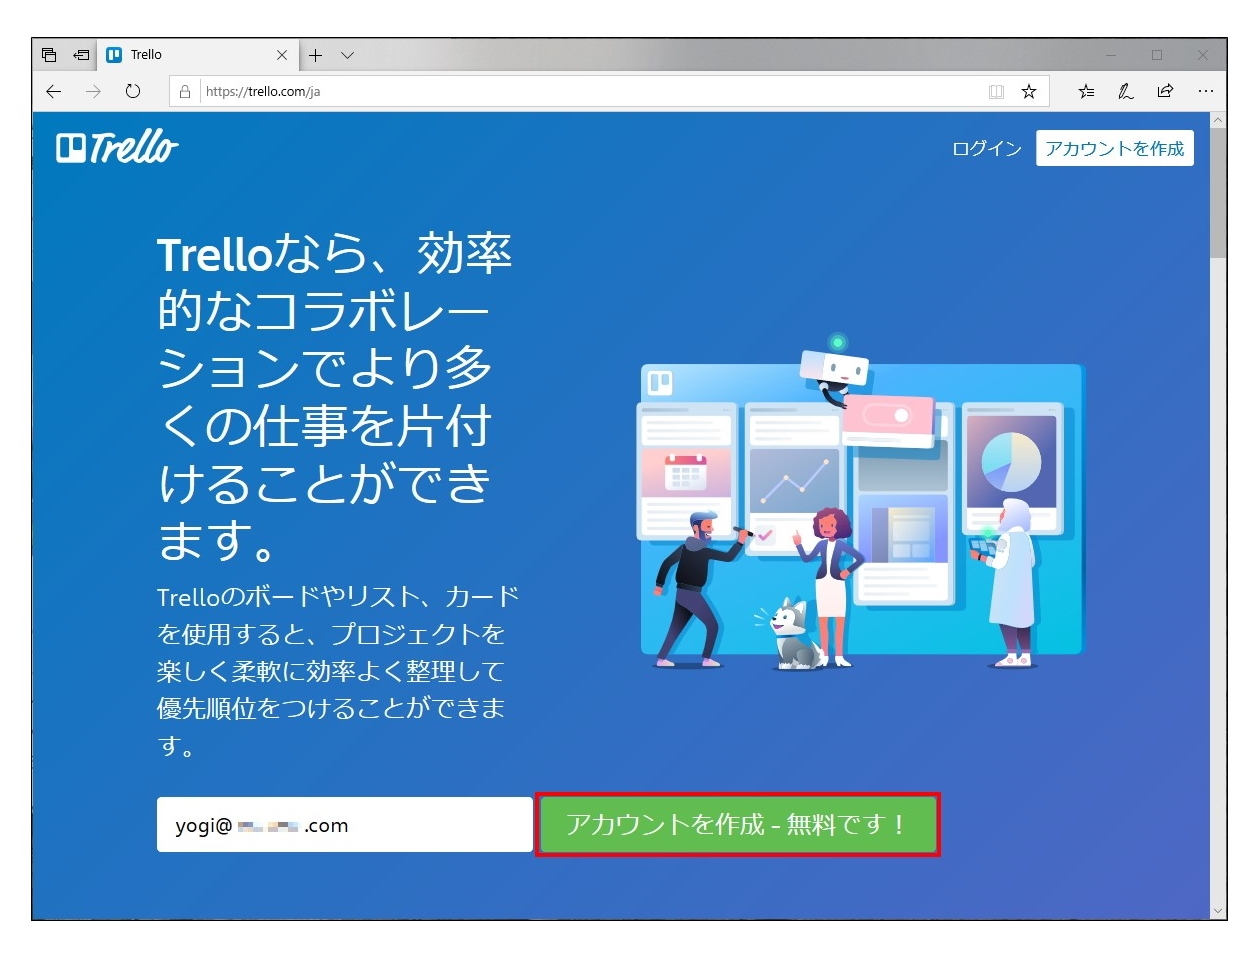 TrelloのWebサイトにアクセスし、メールアドレスを入力して「アカウントを作成」をクリックする （出所：オーストラリアAtlassian）